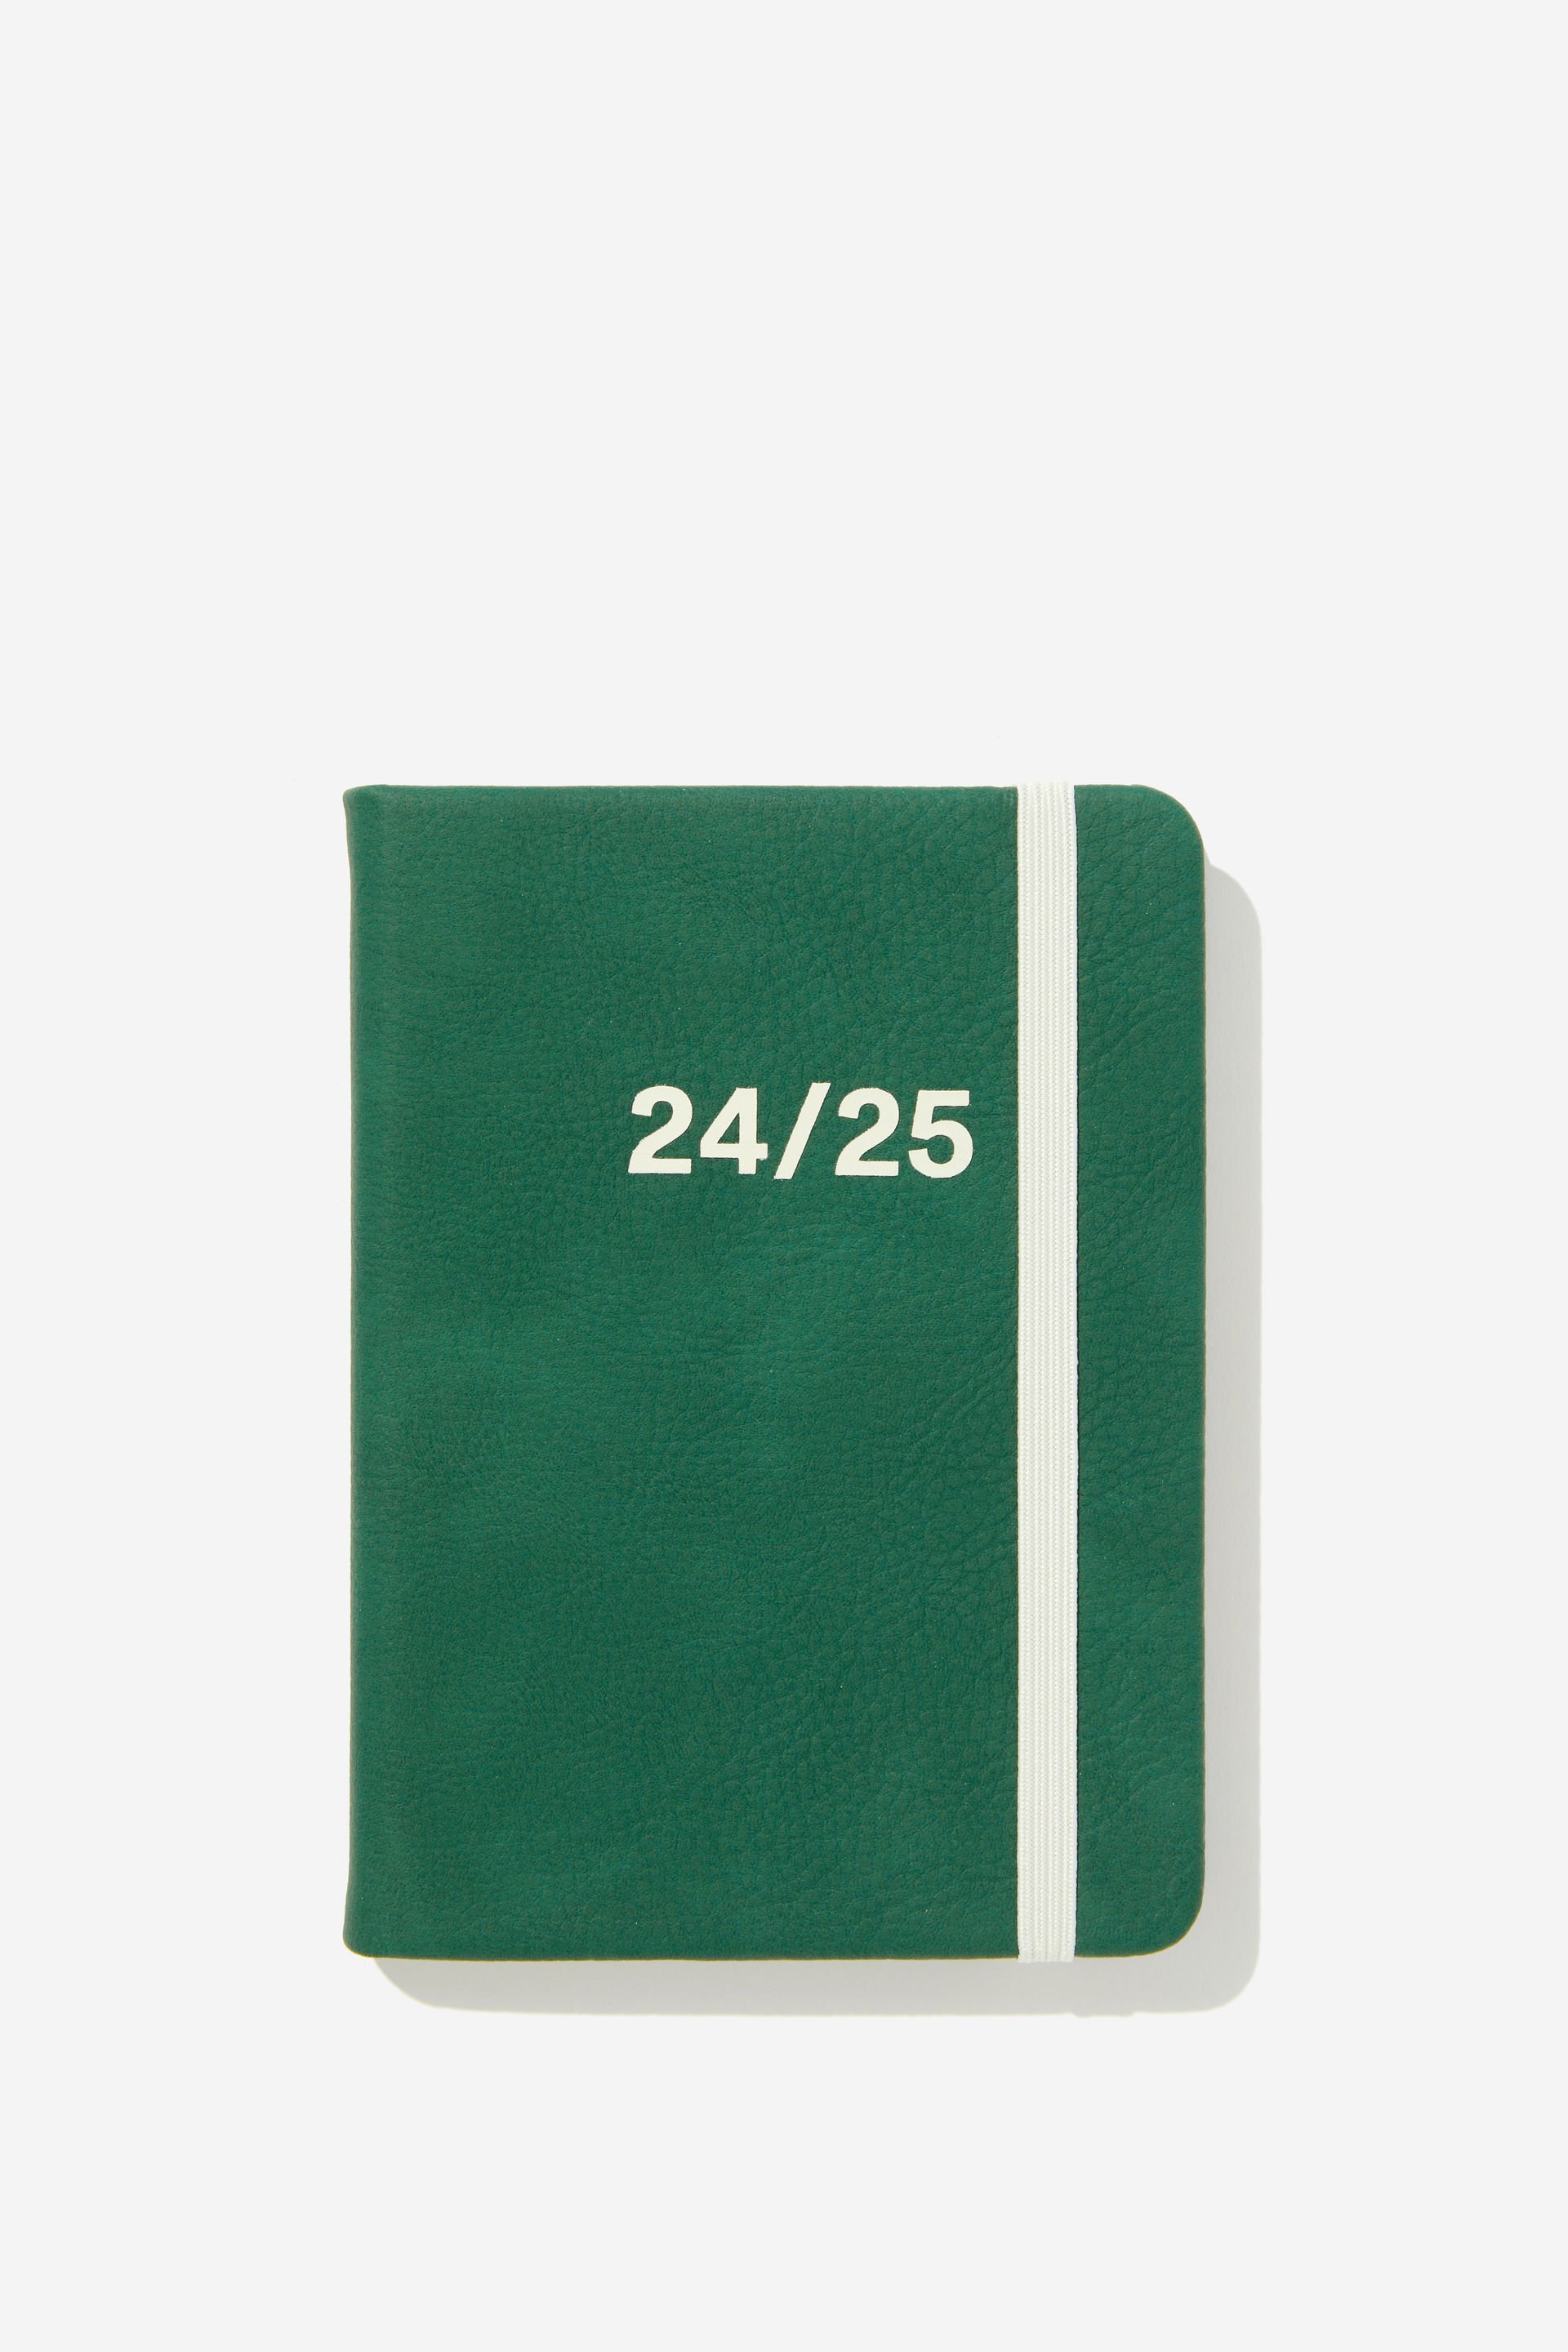 Typo - 2024 25 A6 Weekly Buffalo Diary - Heritage green ecru